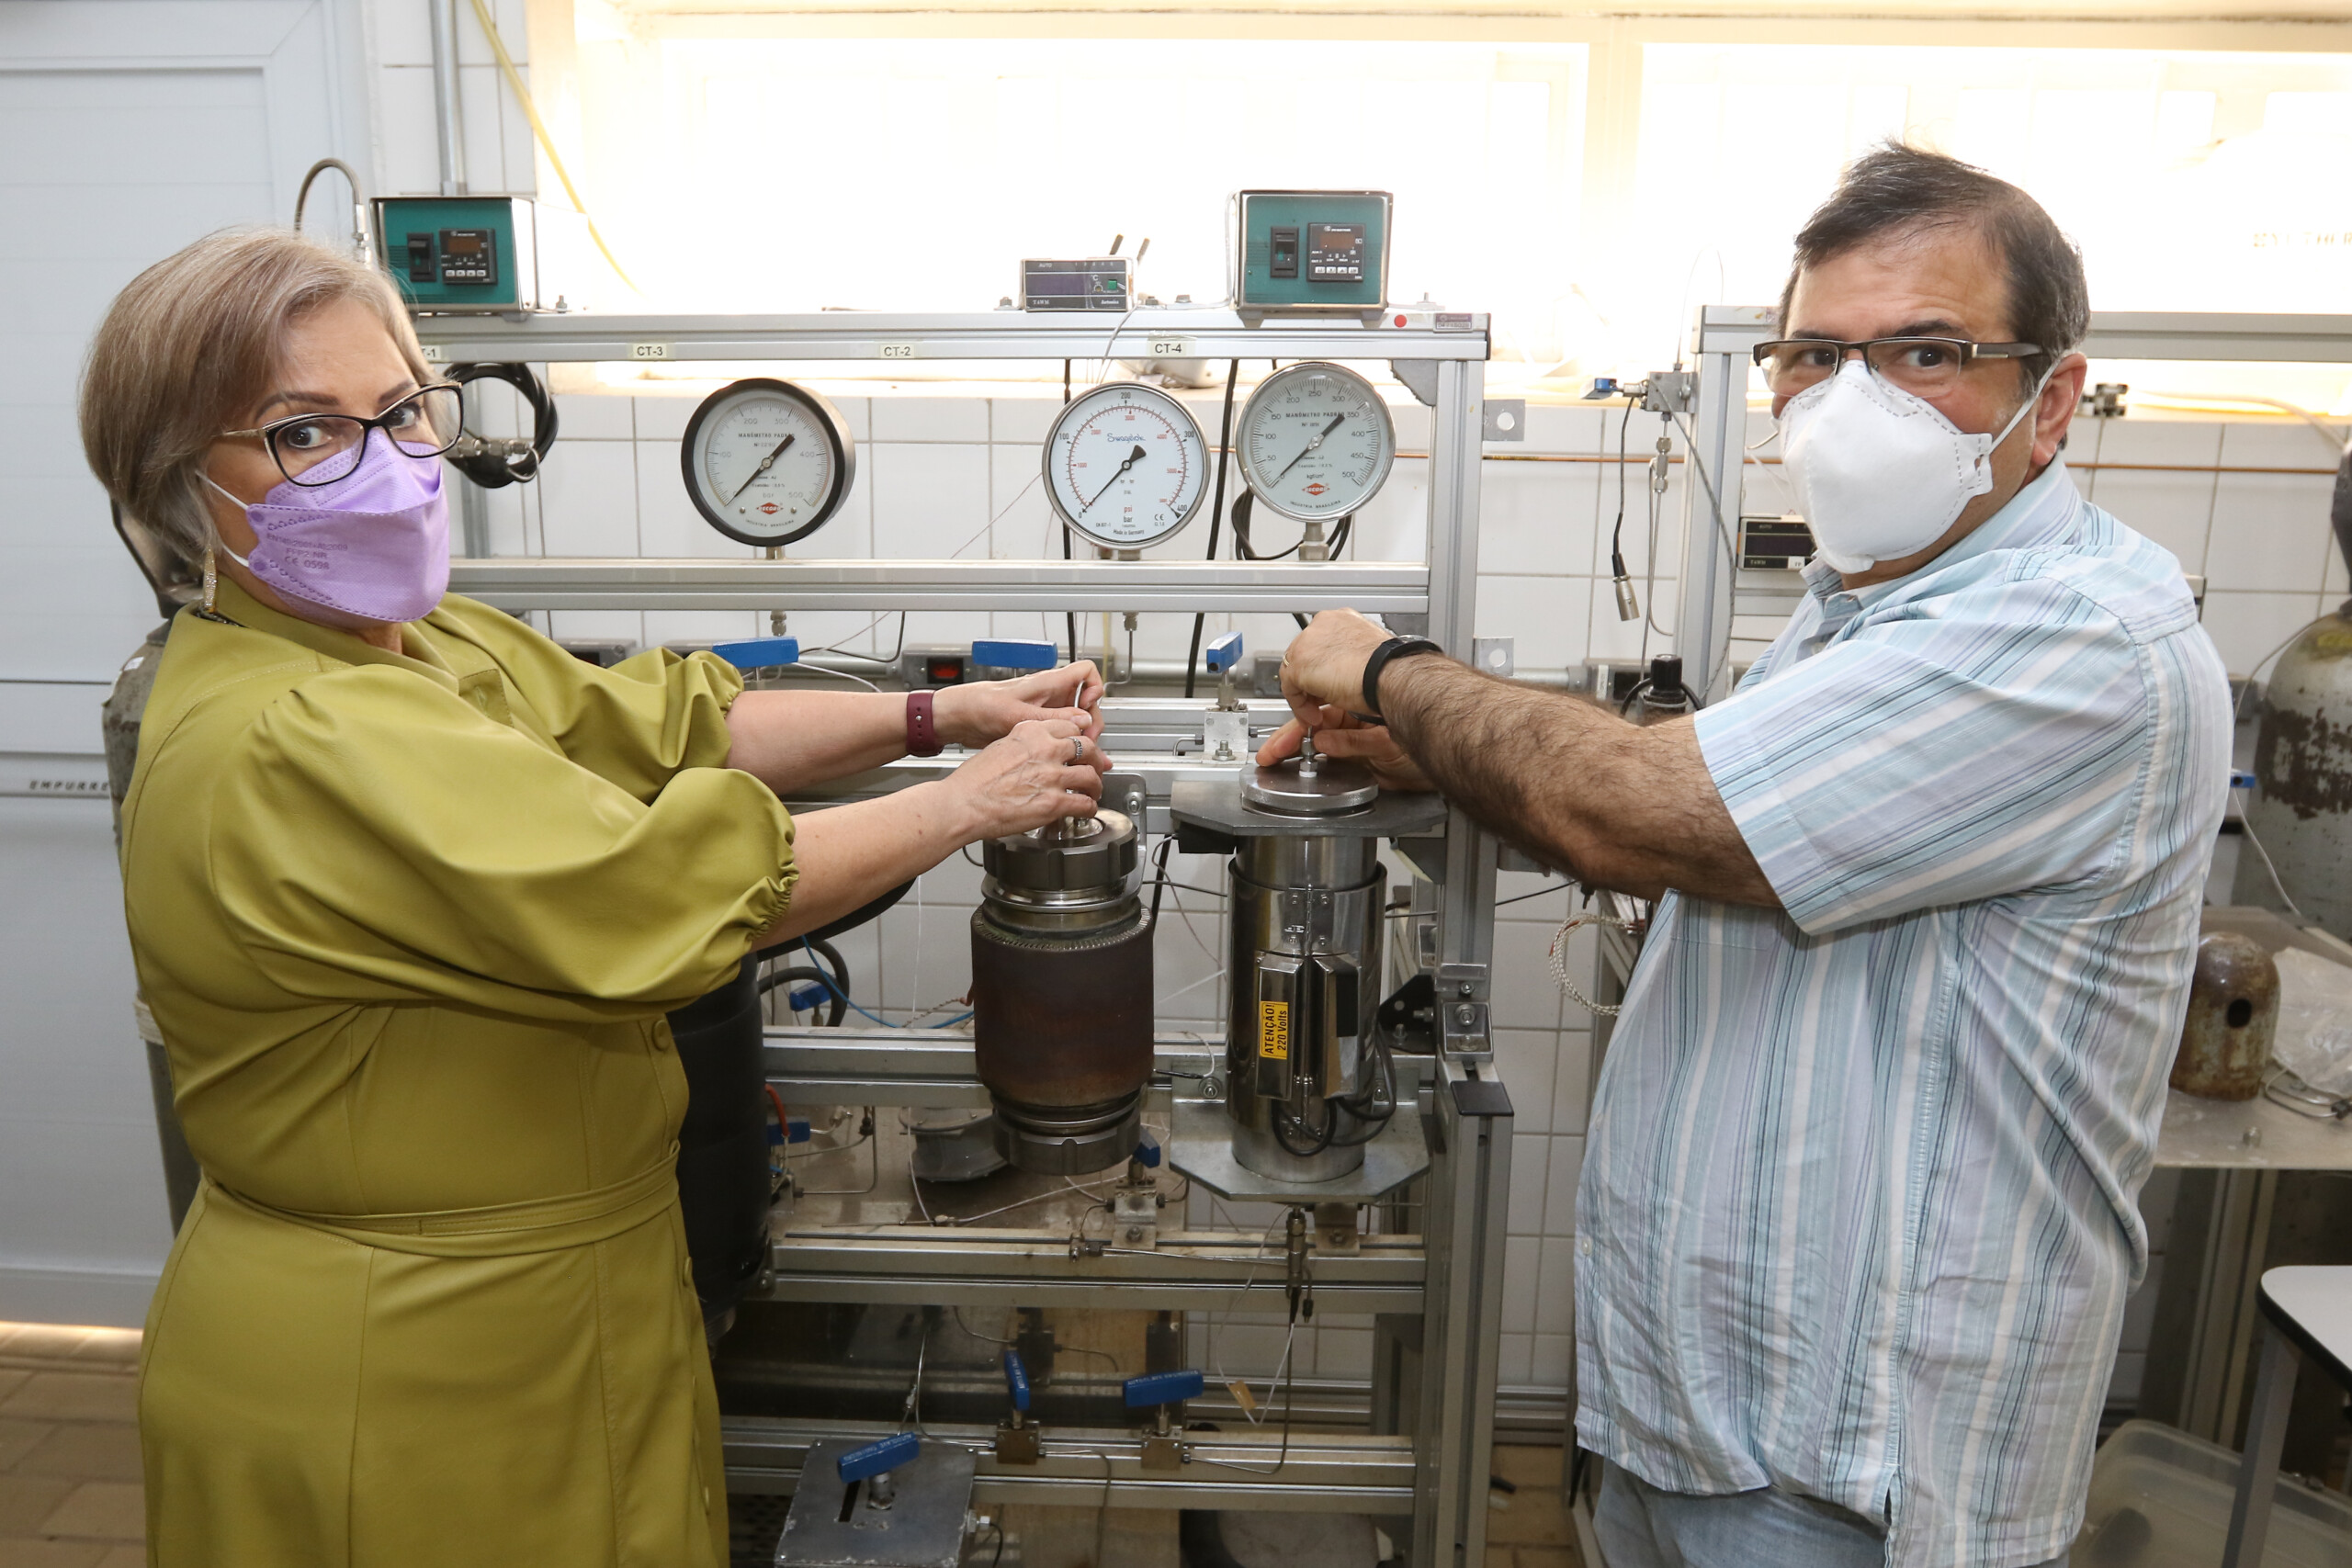 Os pesquisadores estão mexendo no aparelho de extração supercrítica dentro do laboratório, ambos estão de máscara.